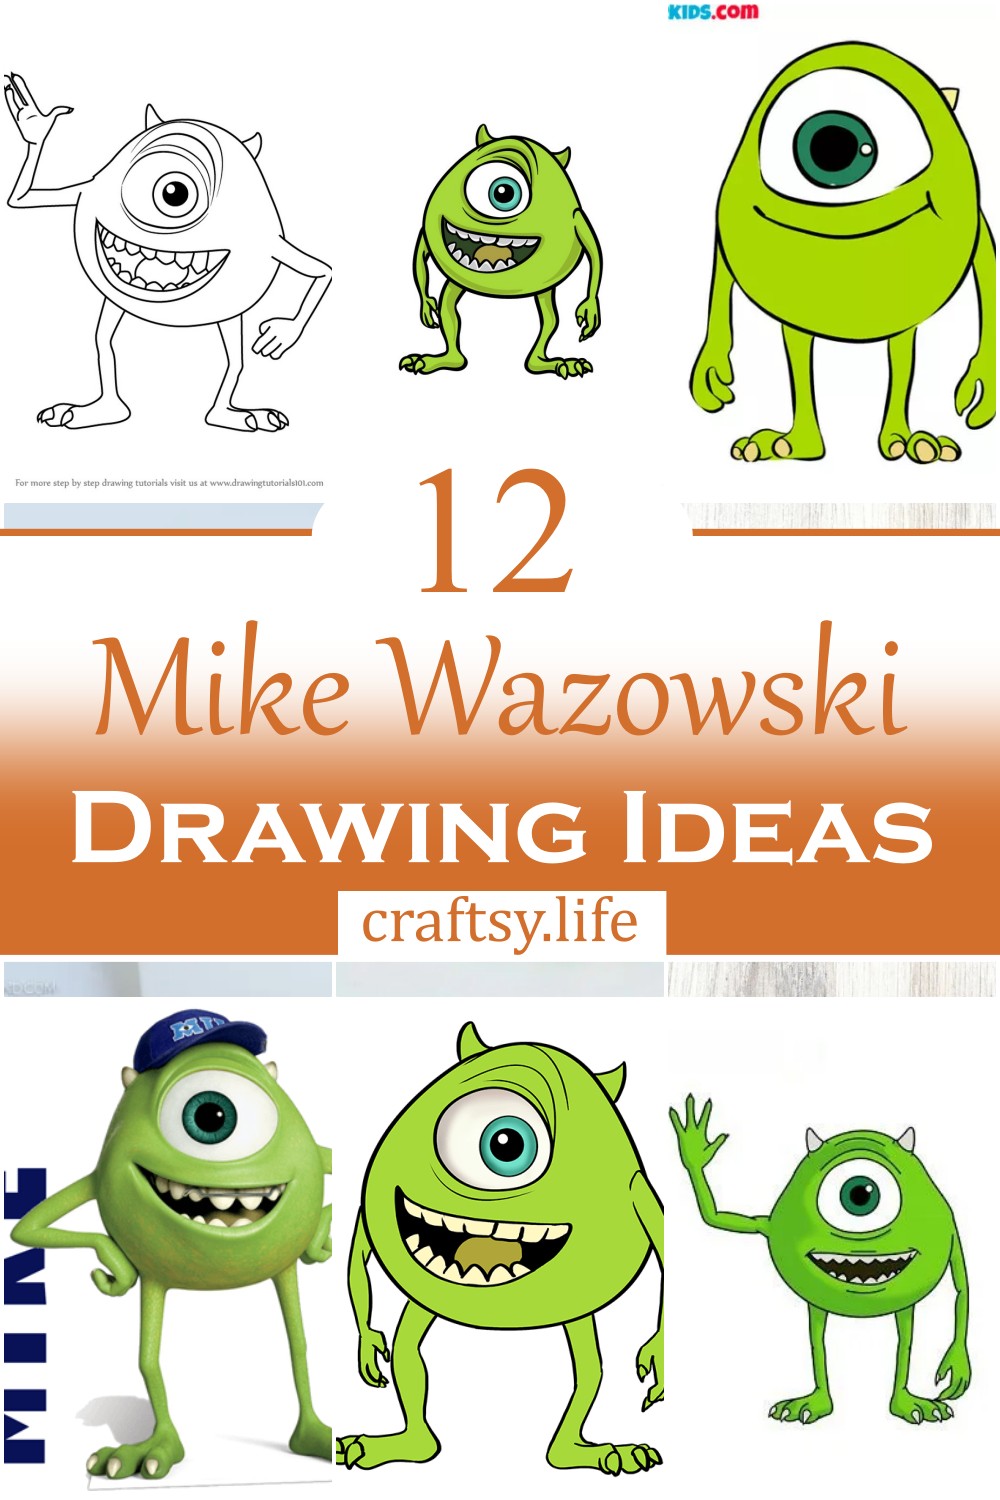 Mike Wazowski Drawing Ideas